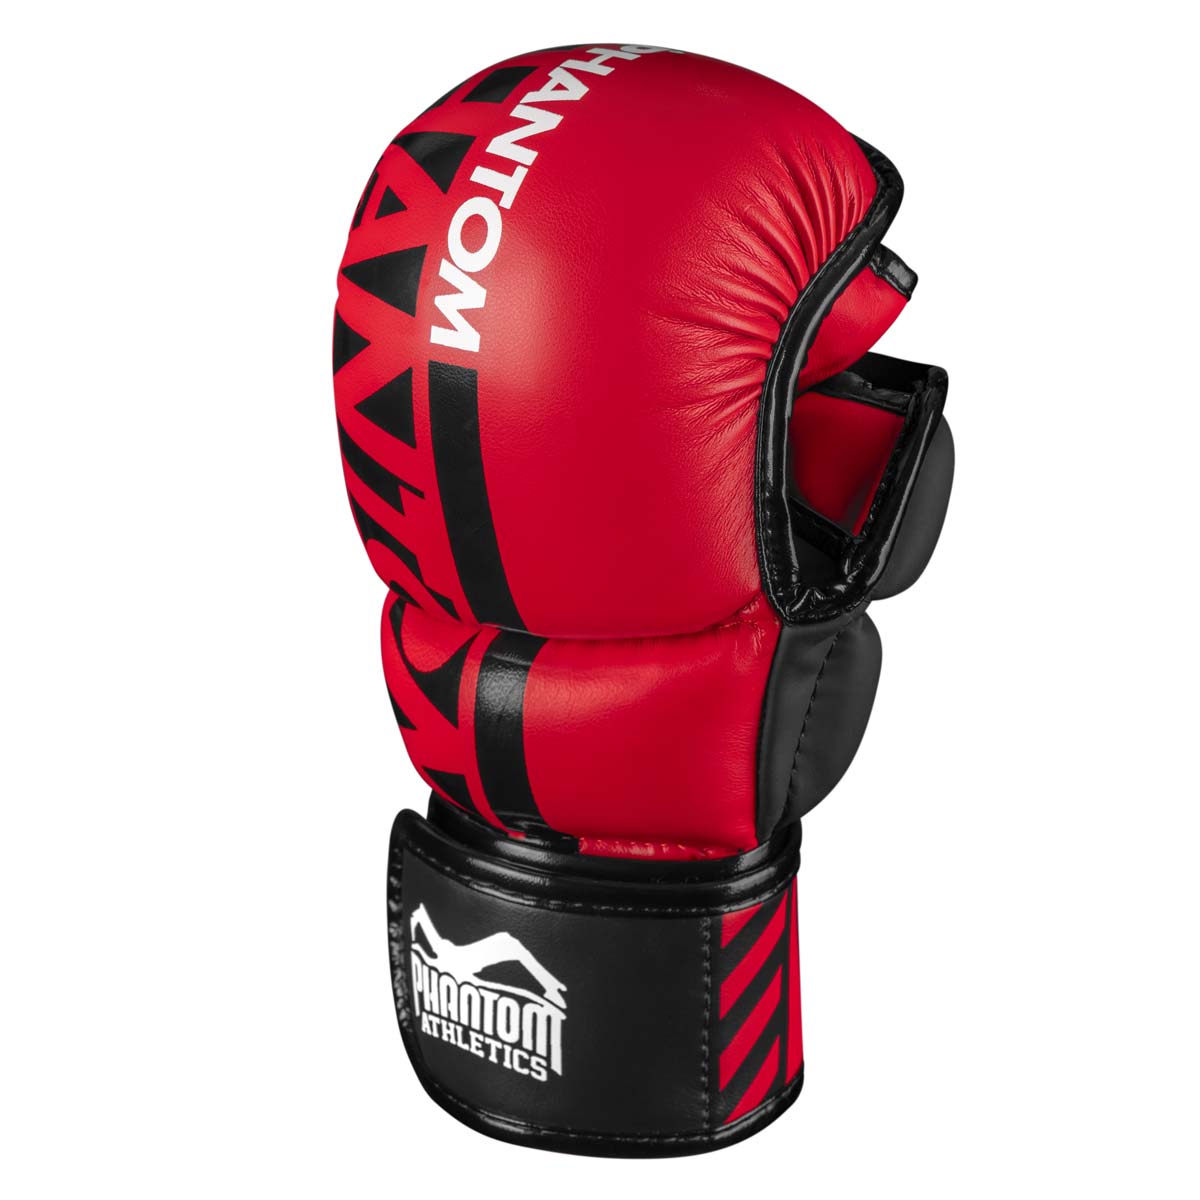 Die Phantom MMA Sparringshandschuhe. Der sicherste Handschuh für dein Kampfsport Training. Jetzt in der limitierten roten Farbe.